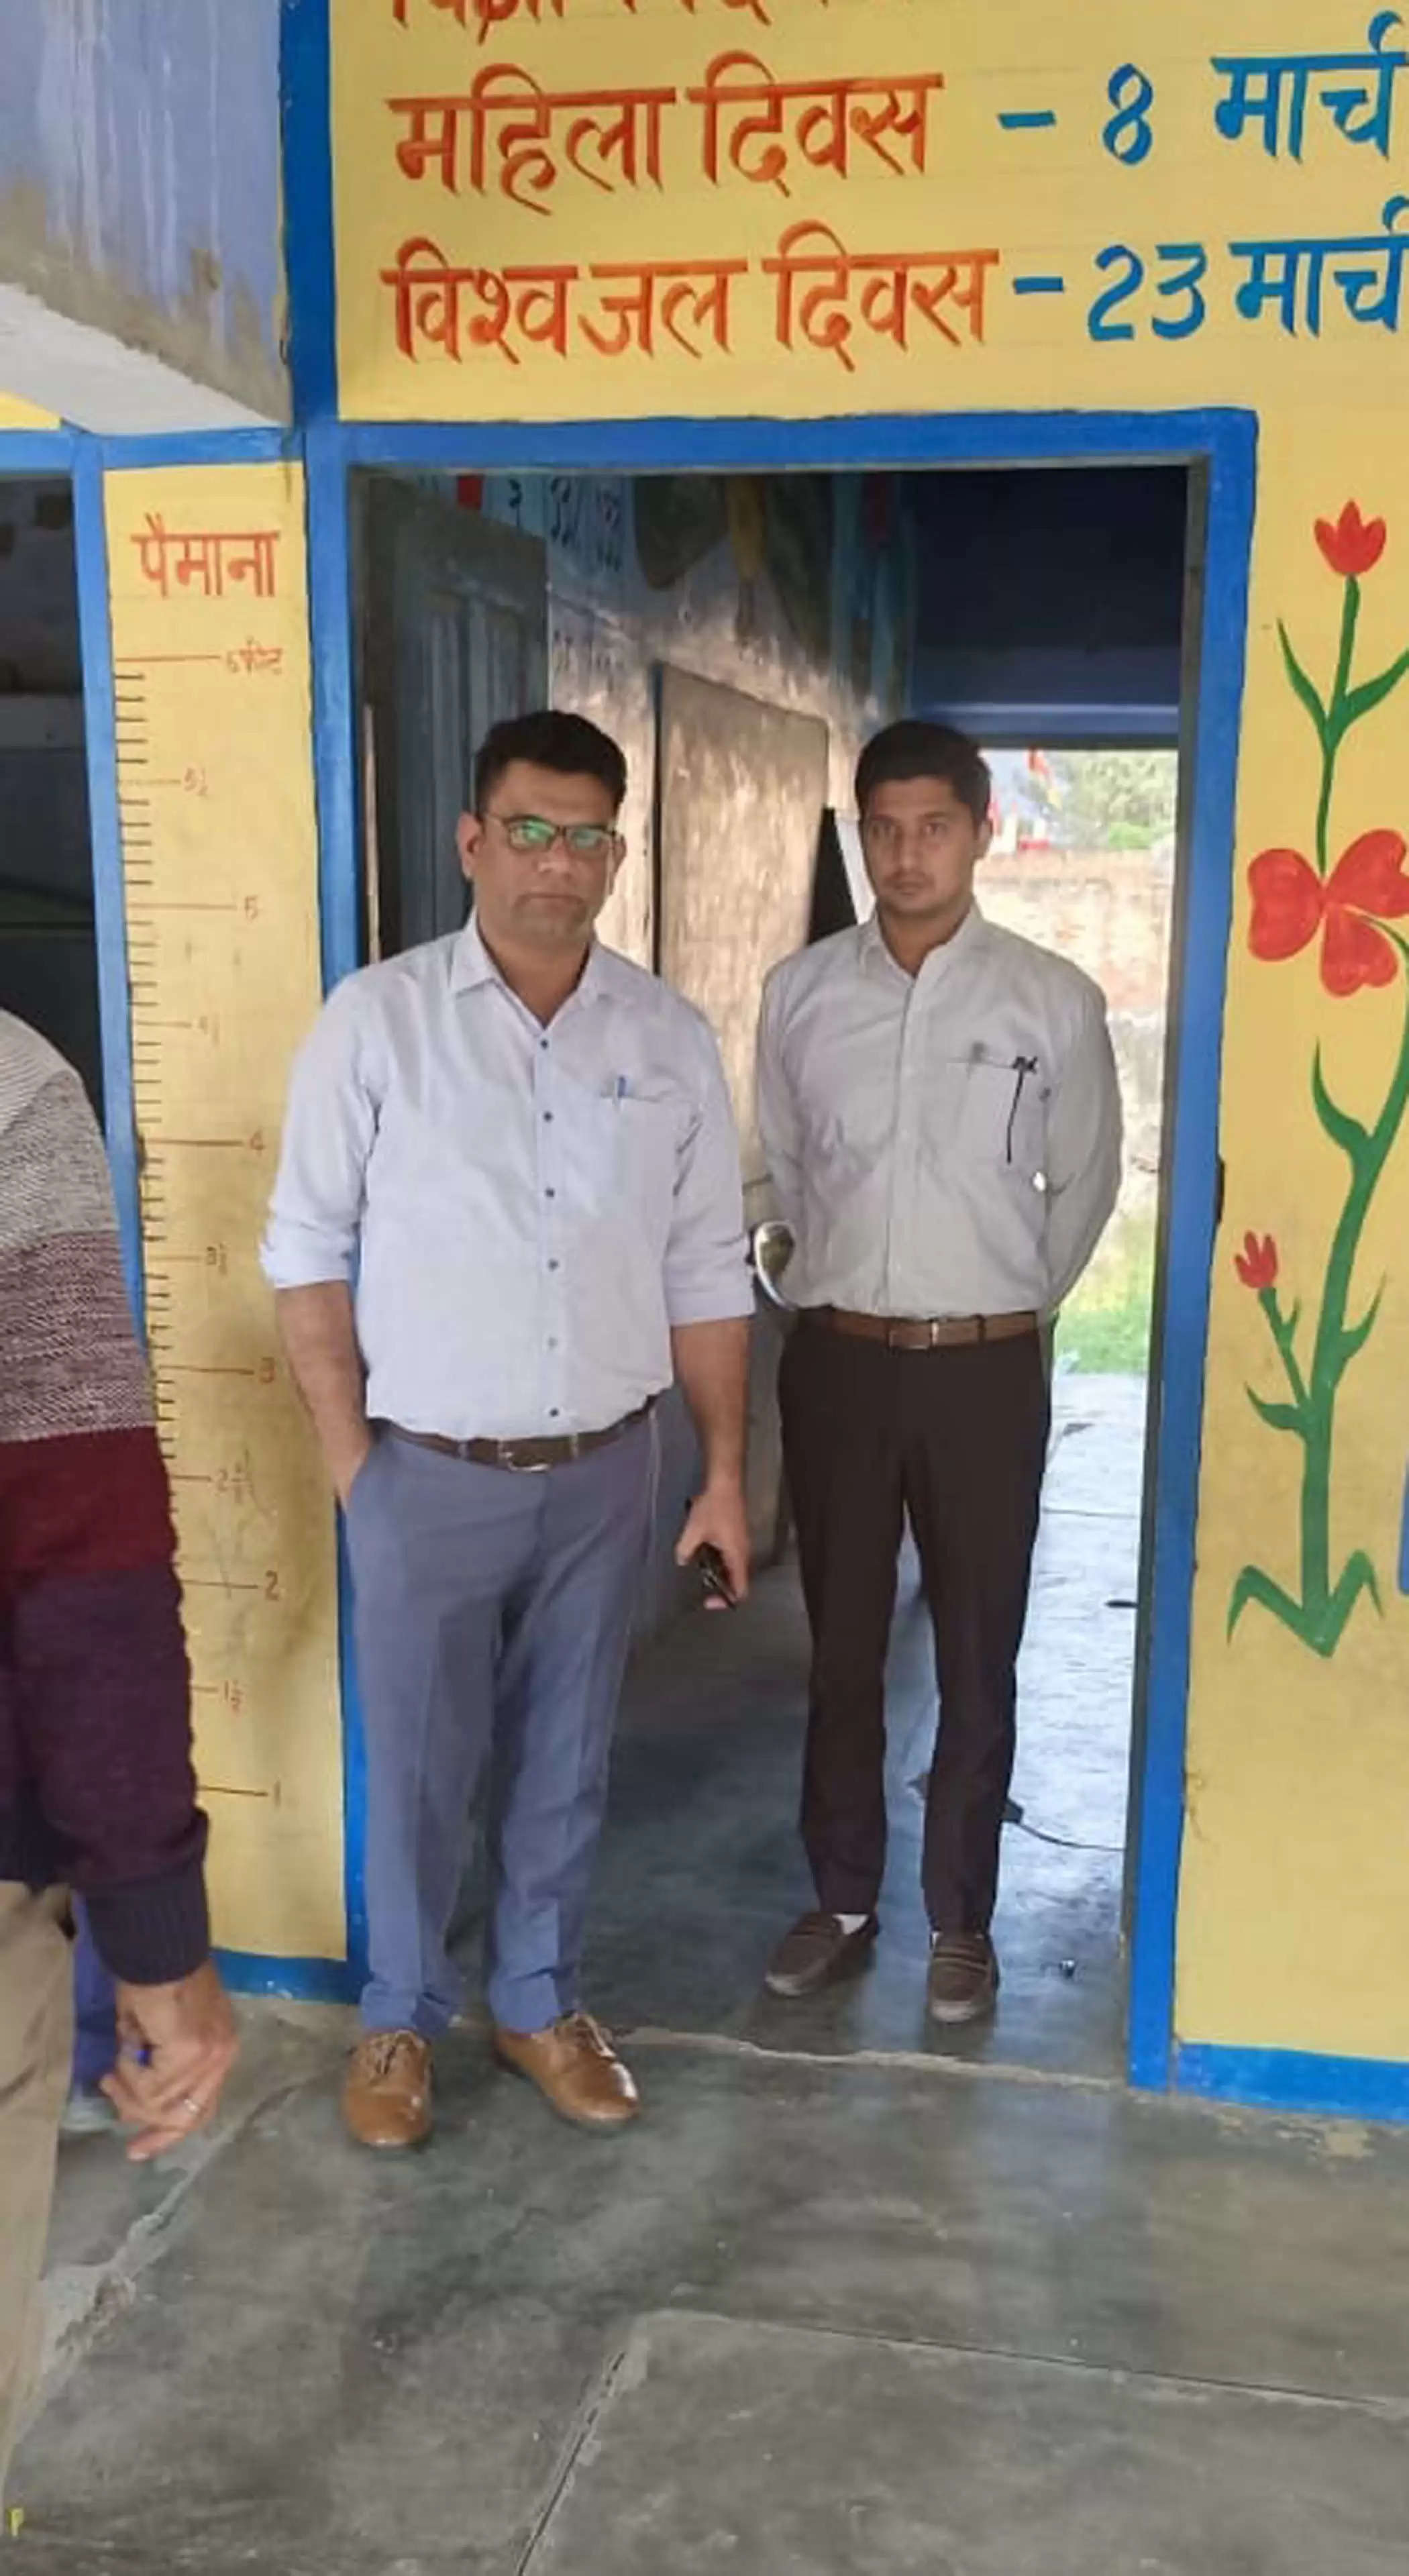 नगराधीश ने भूना क्षेत्र के गांवों में किया मतदान केंद्रों का निरीक्षण